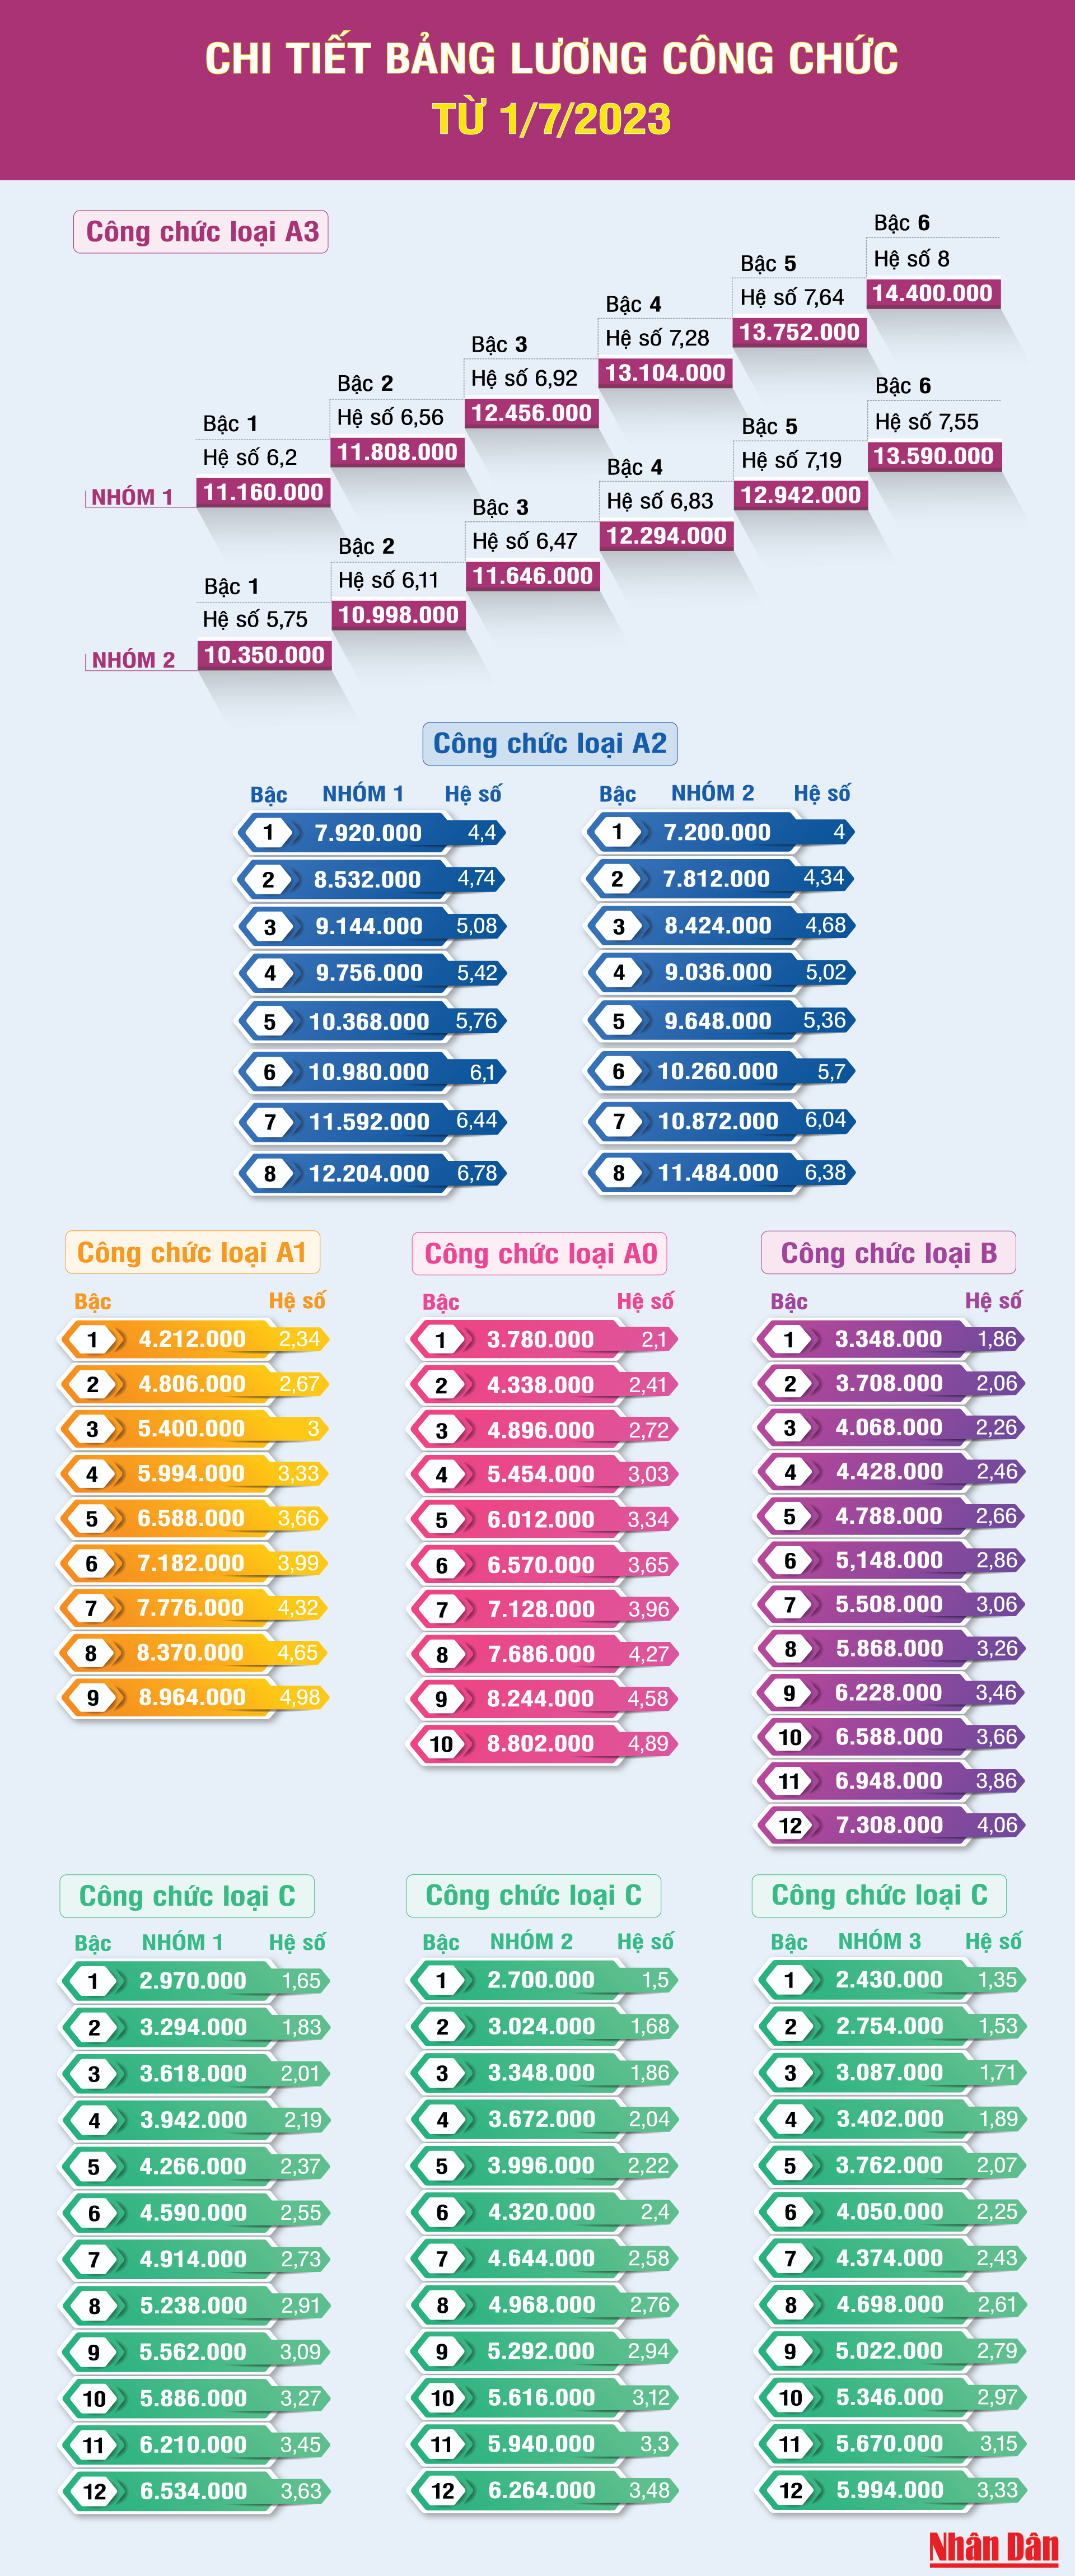 [Infographic] Chi tiết bảng lương công chức từ ngày 1/7/2023 ảnh 1